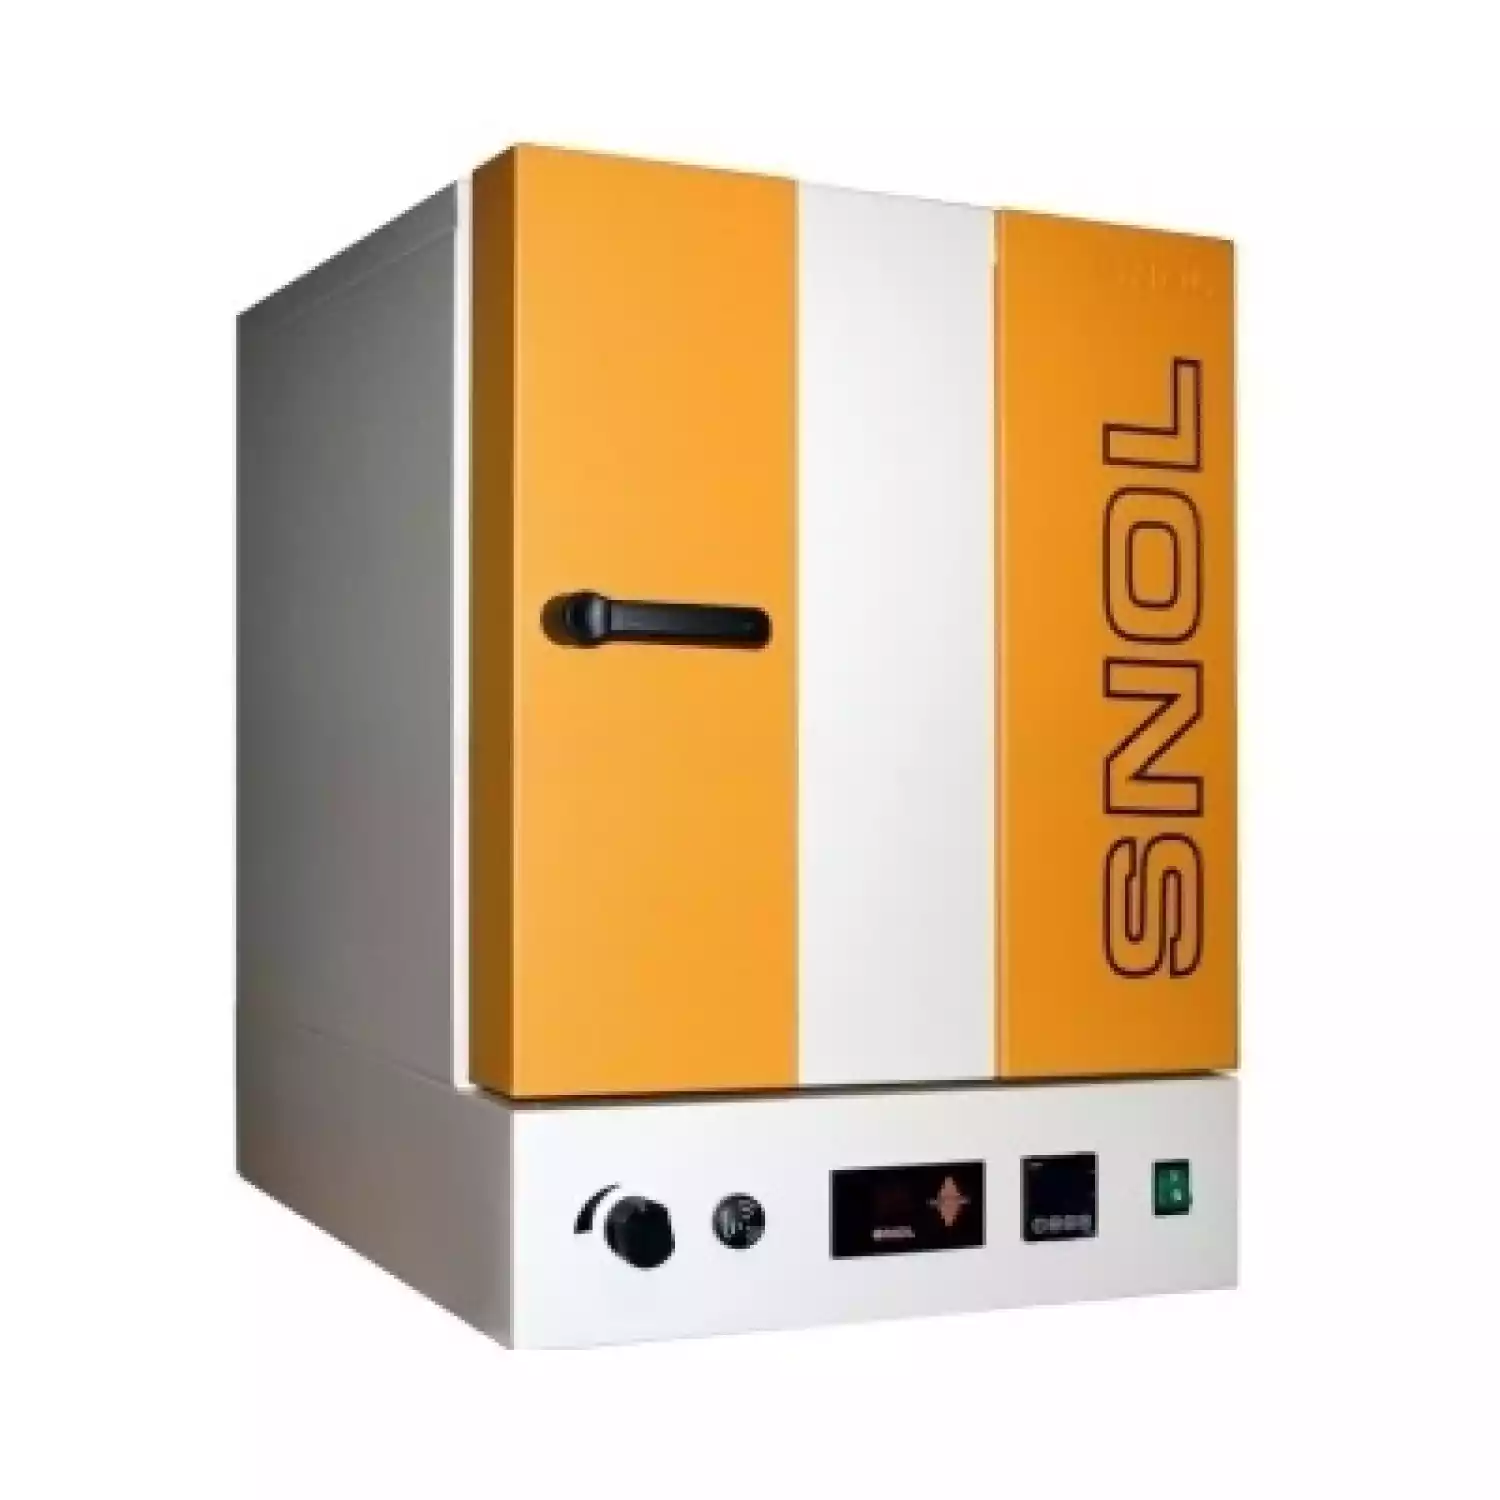 SNOL 220/300 LFN Шкаф сушильный (220 л, нержавеющая сталь, интерфейс) - 1